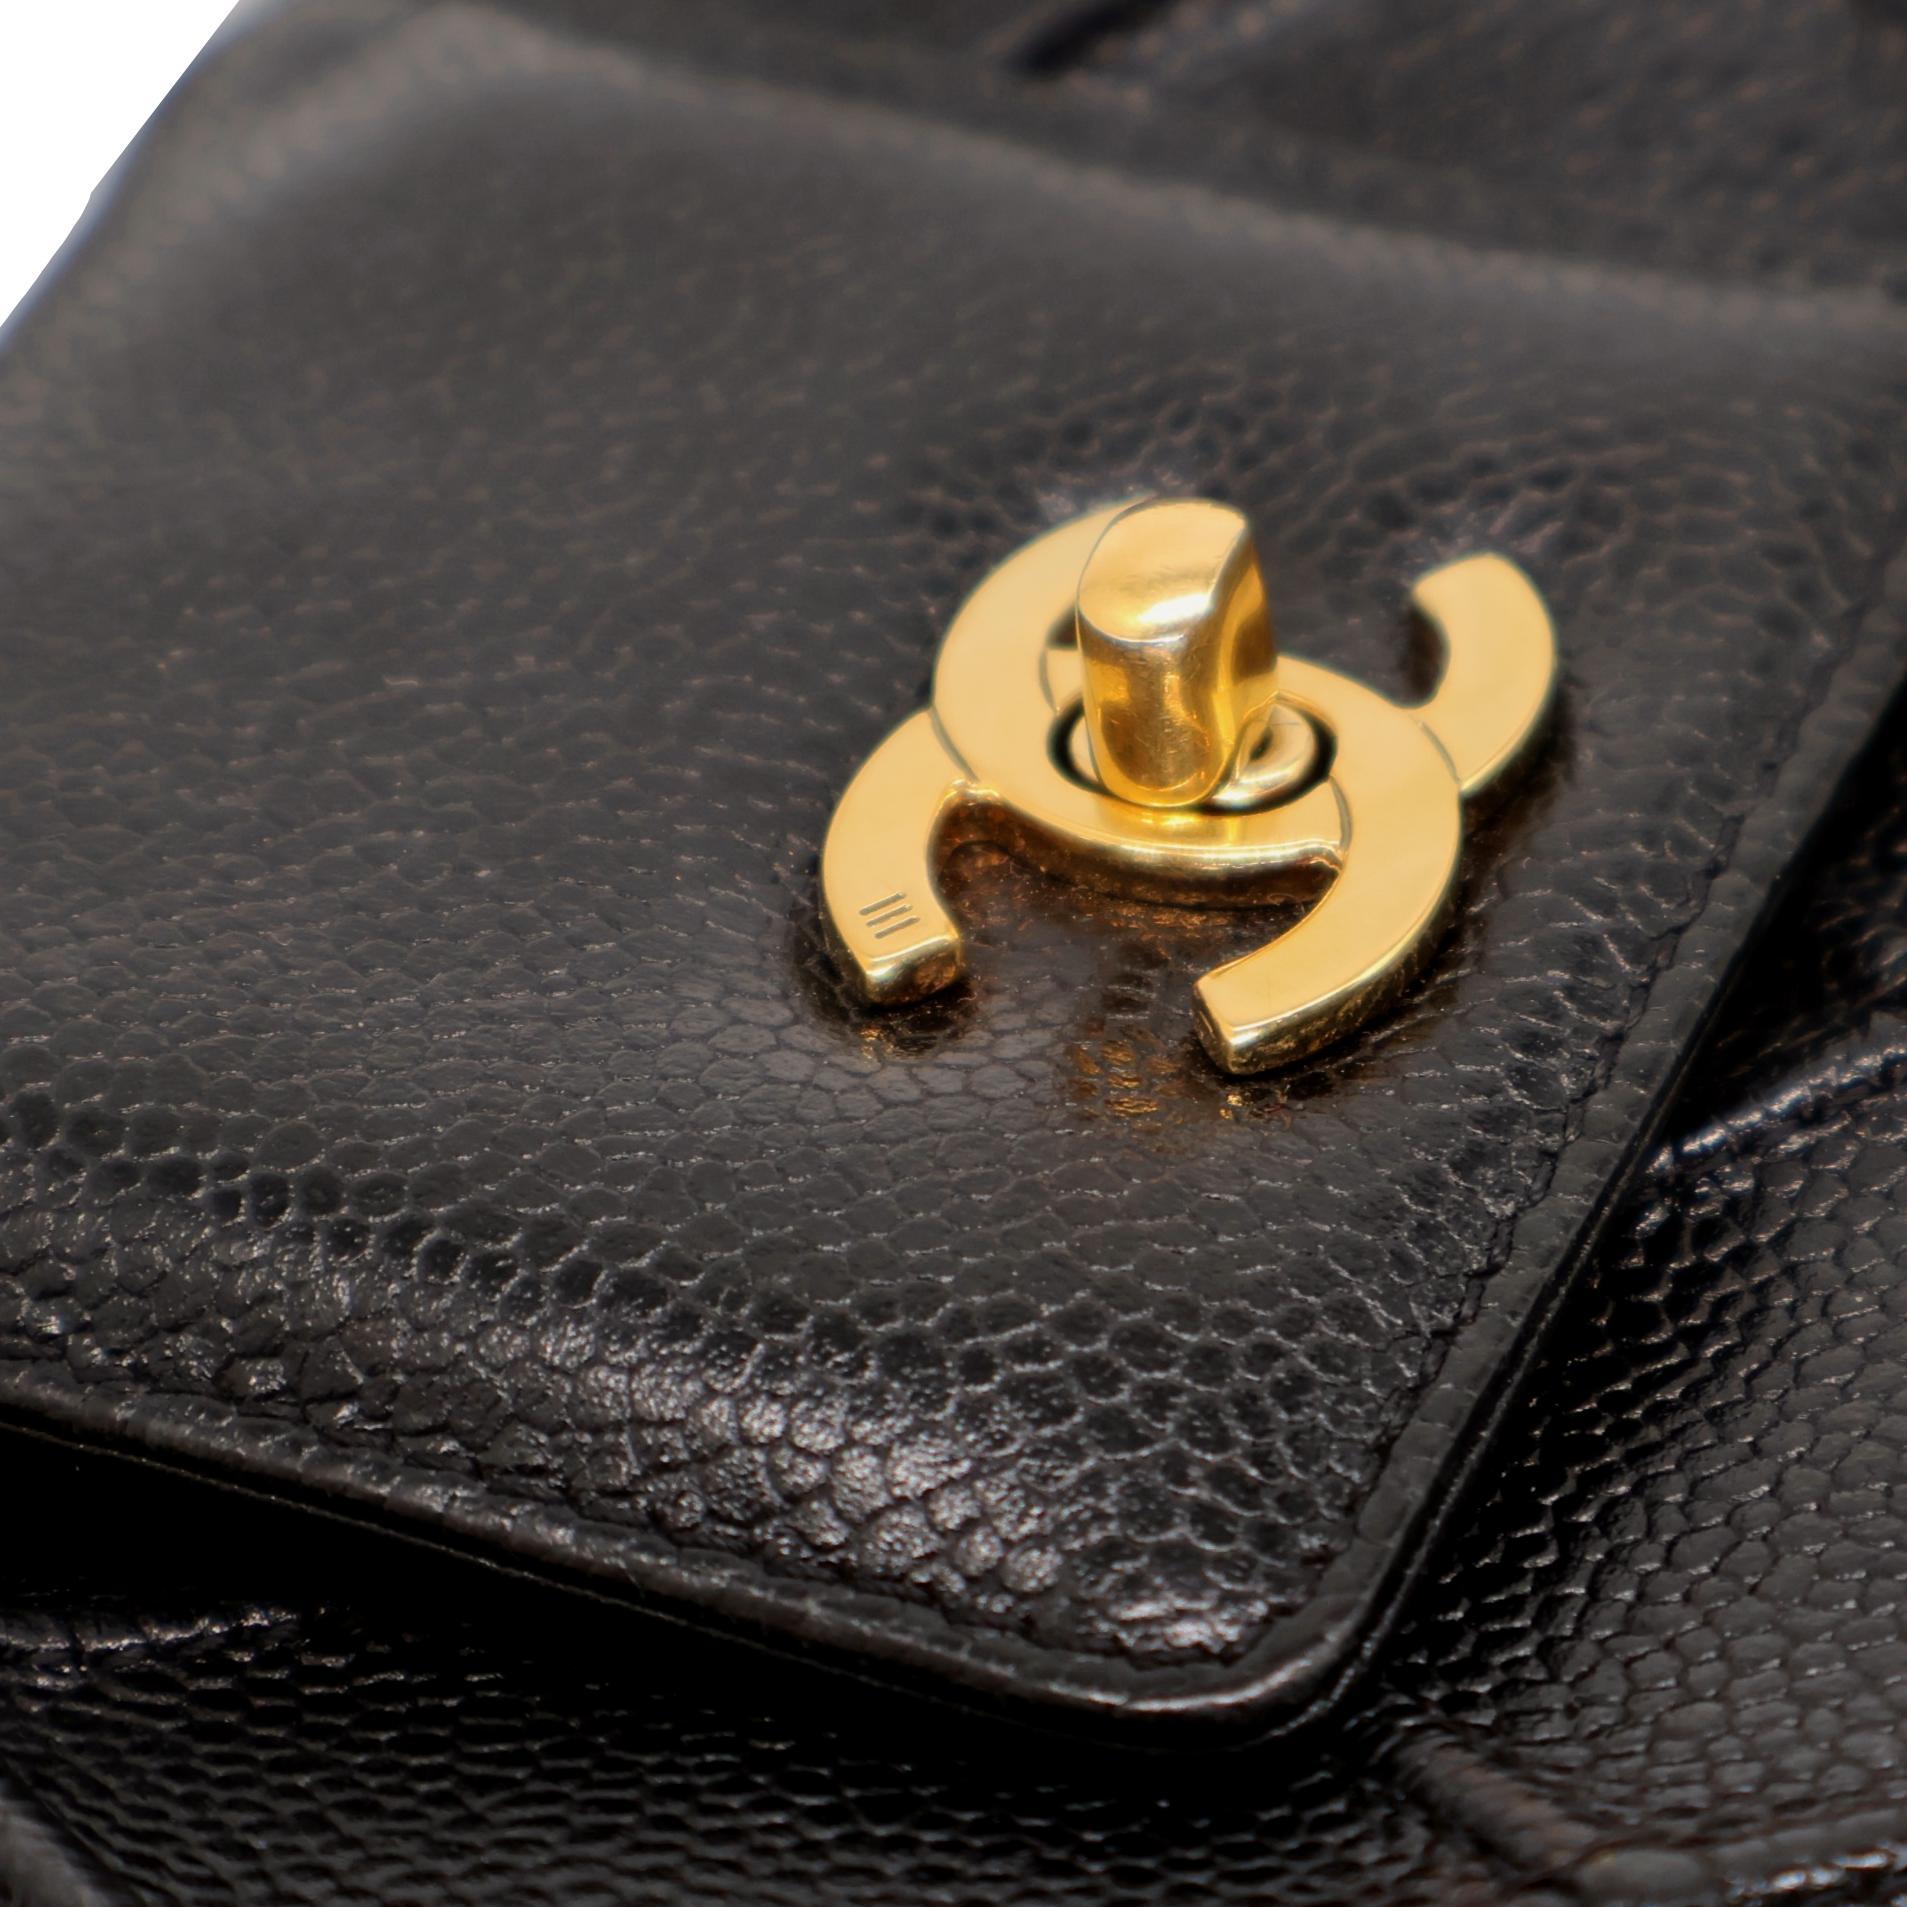 Chanel Vintage Black Reverse Quilted Caviar Leather Shoulder Bag, 1996 - 1997. For Sale 2